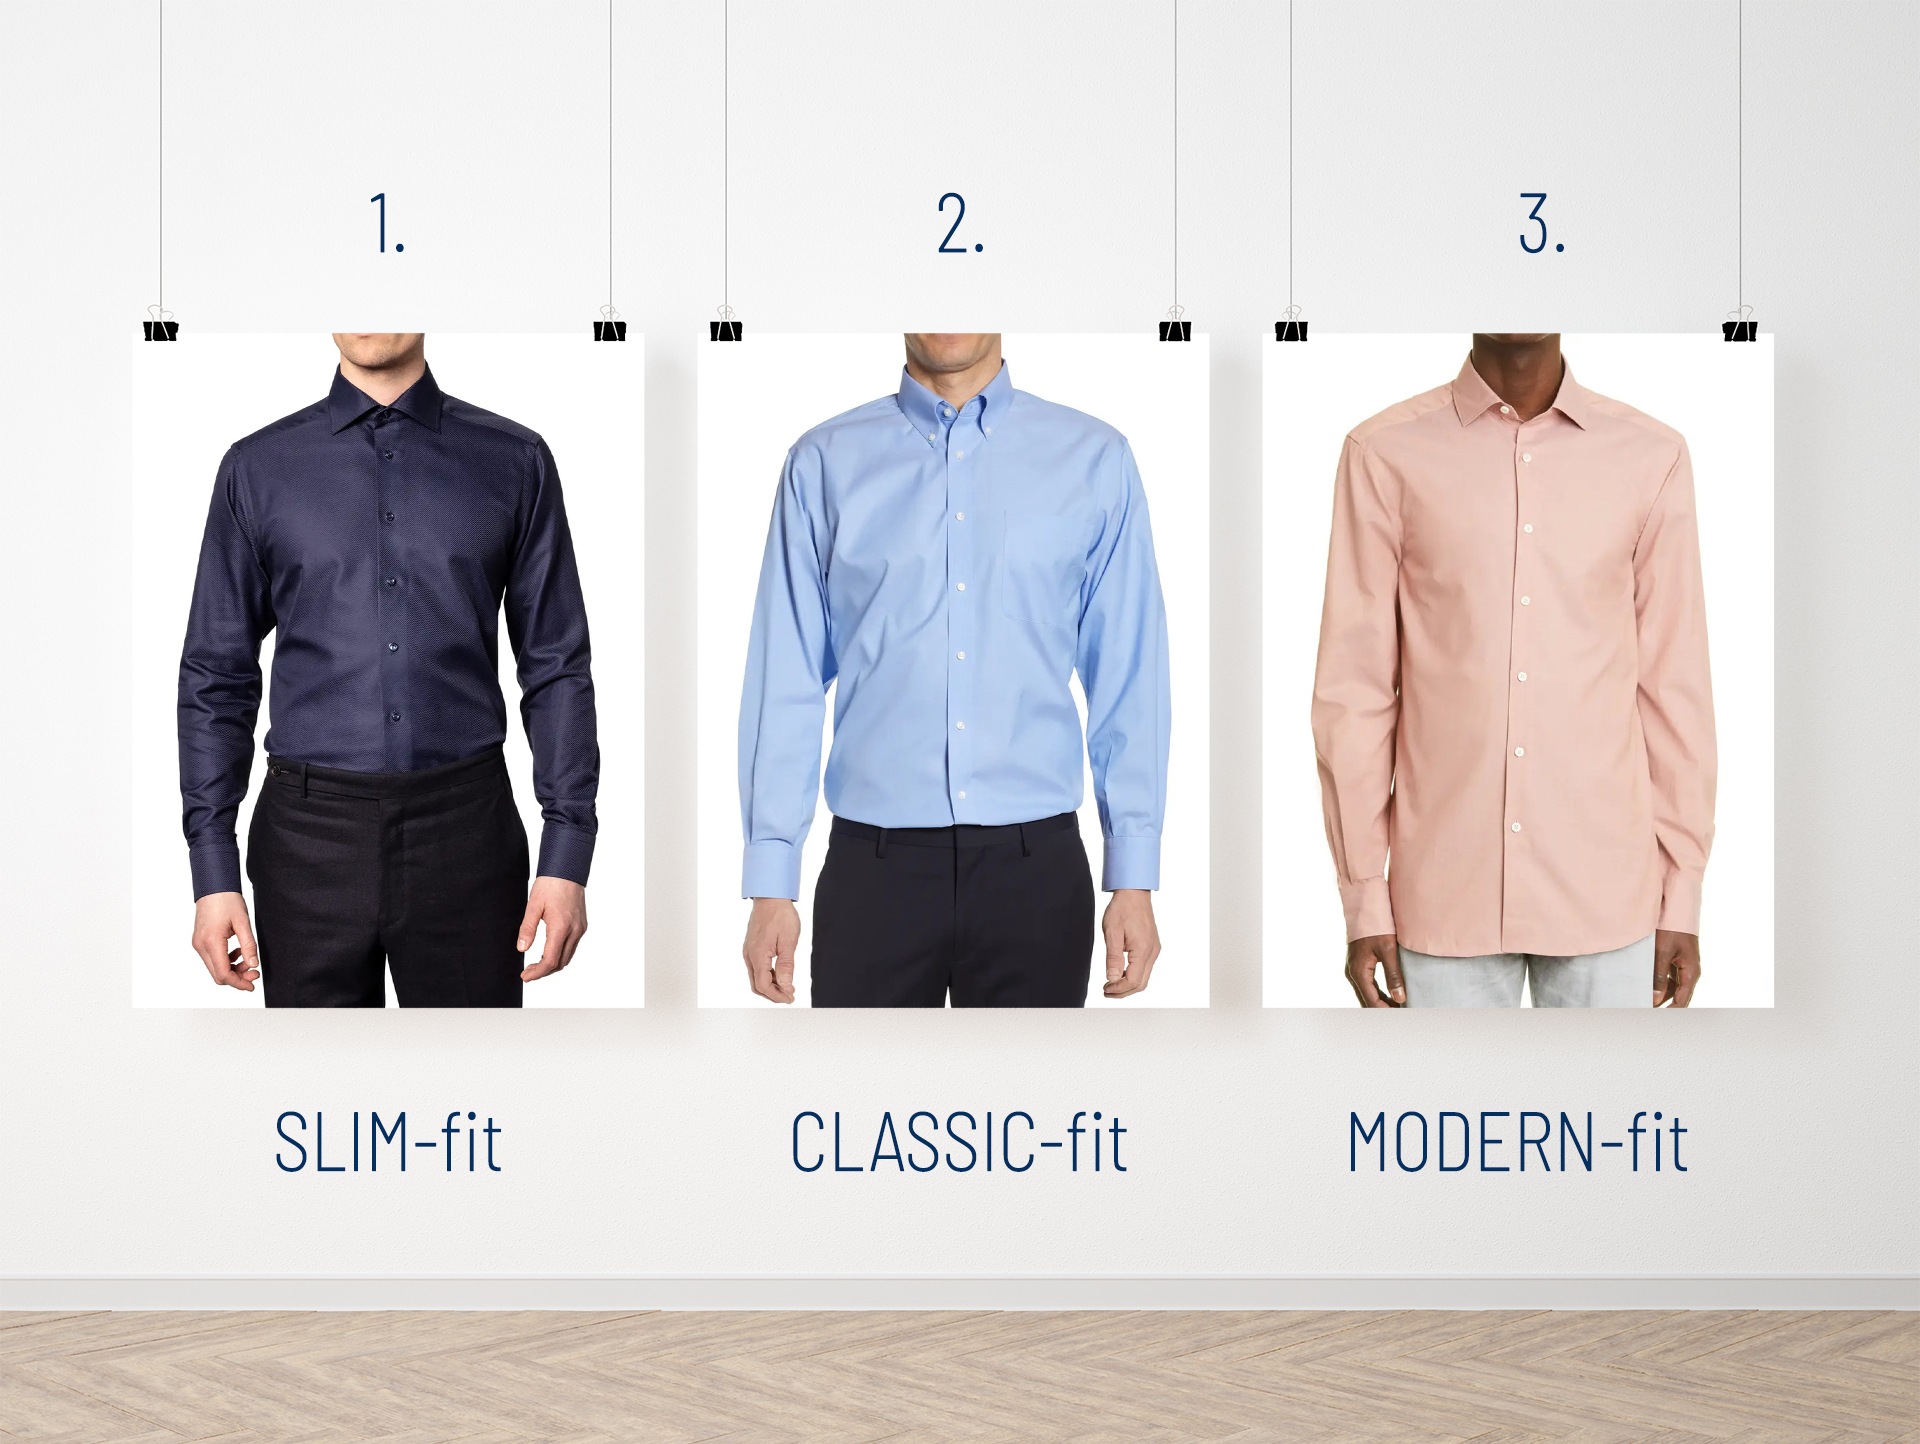 Slim fit vs. classic fit vs. modern fit dress shirt